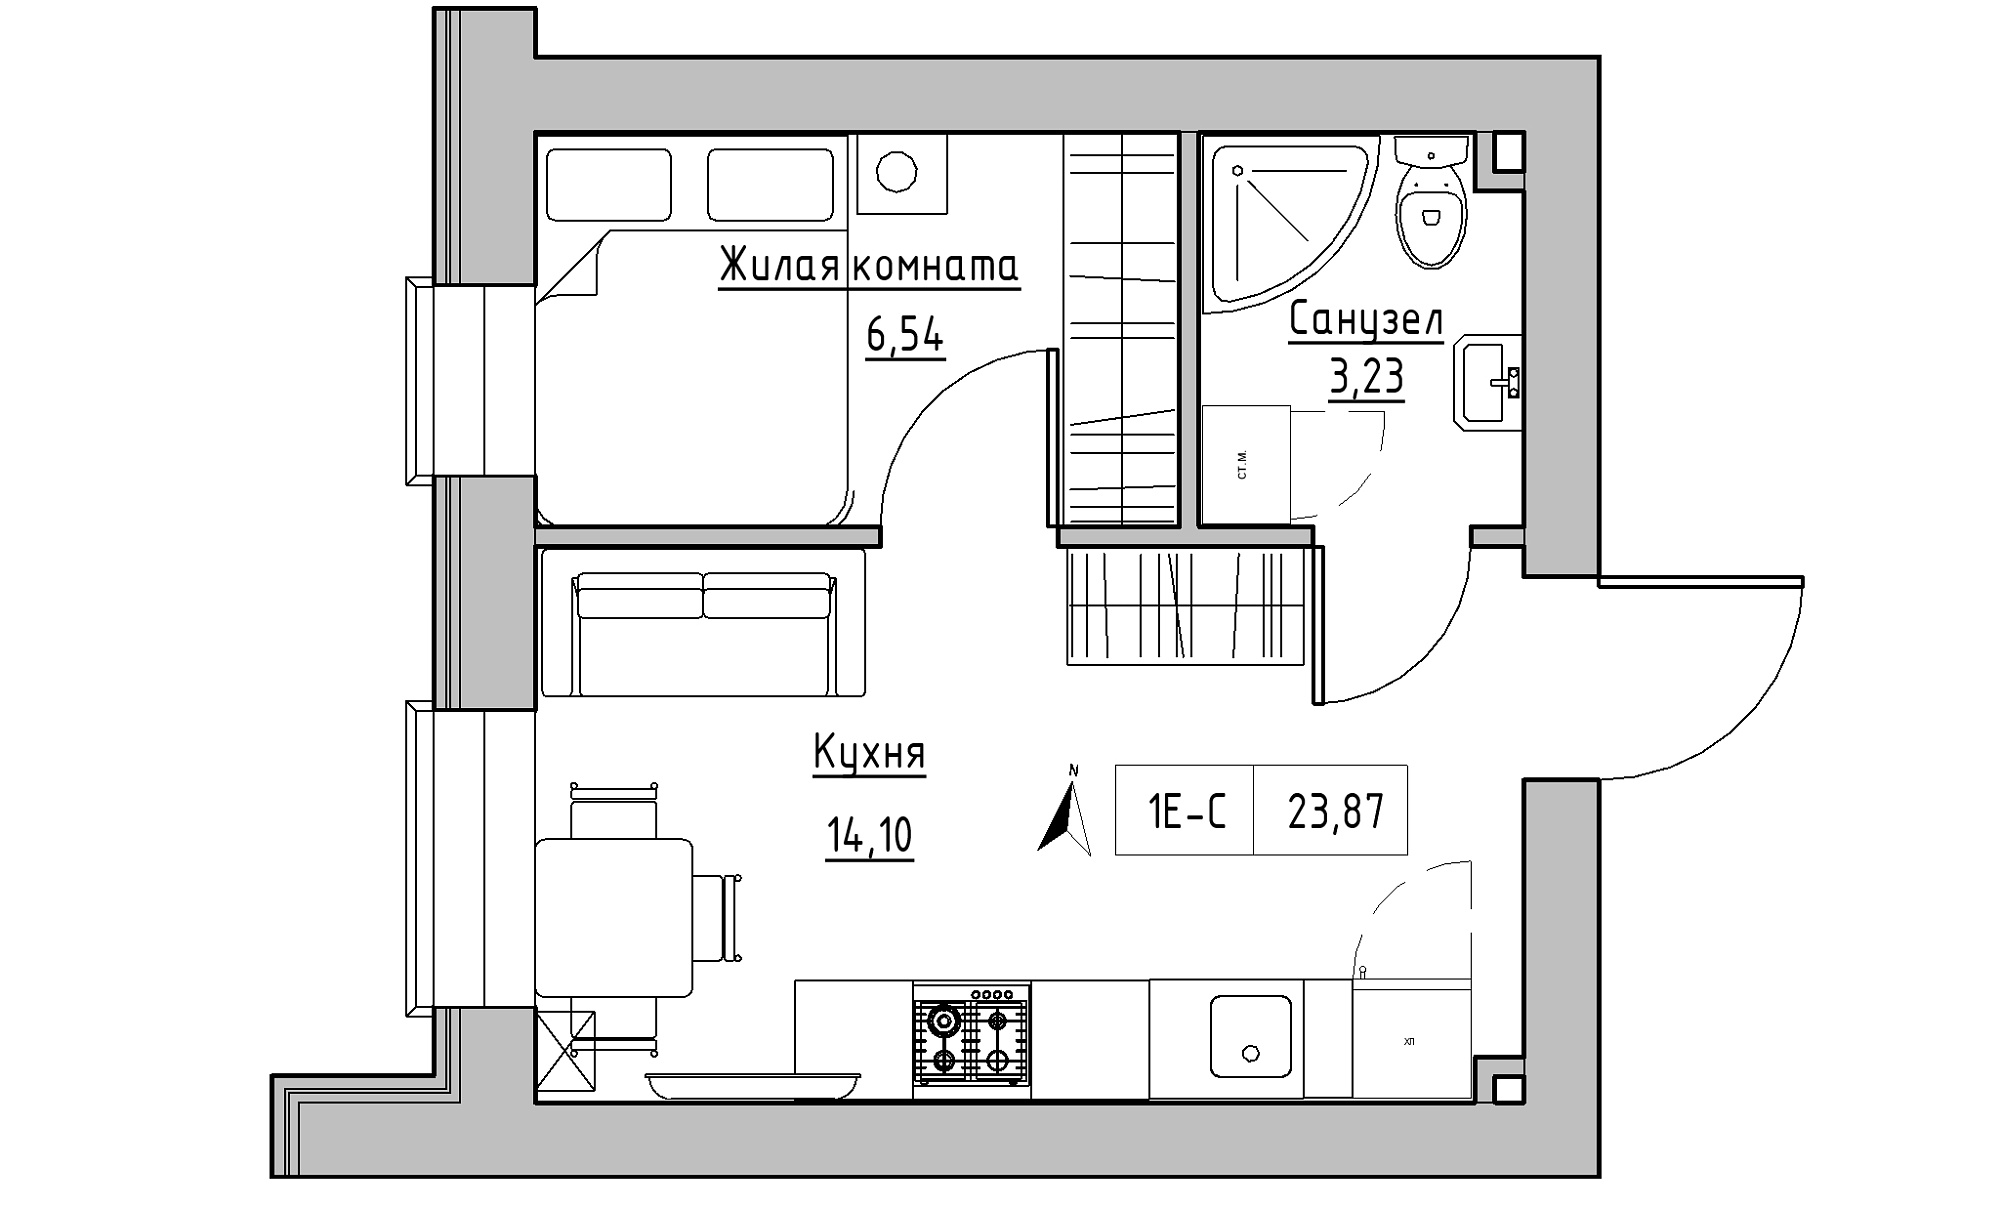 Планировка 1-к квартира площей 23.87м2, KS-016-05/0015.